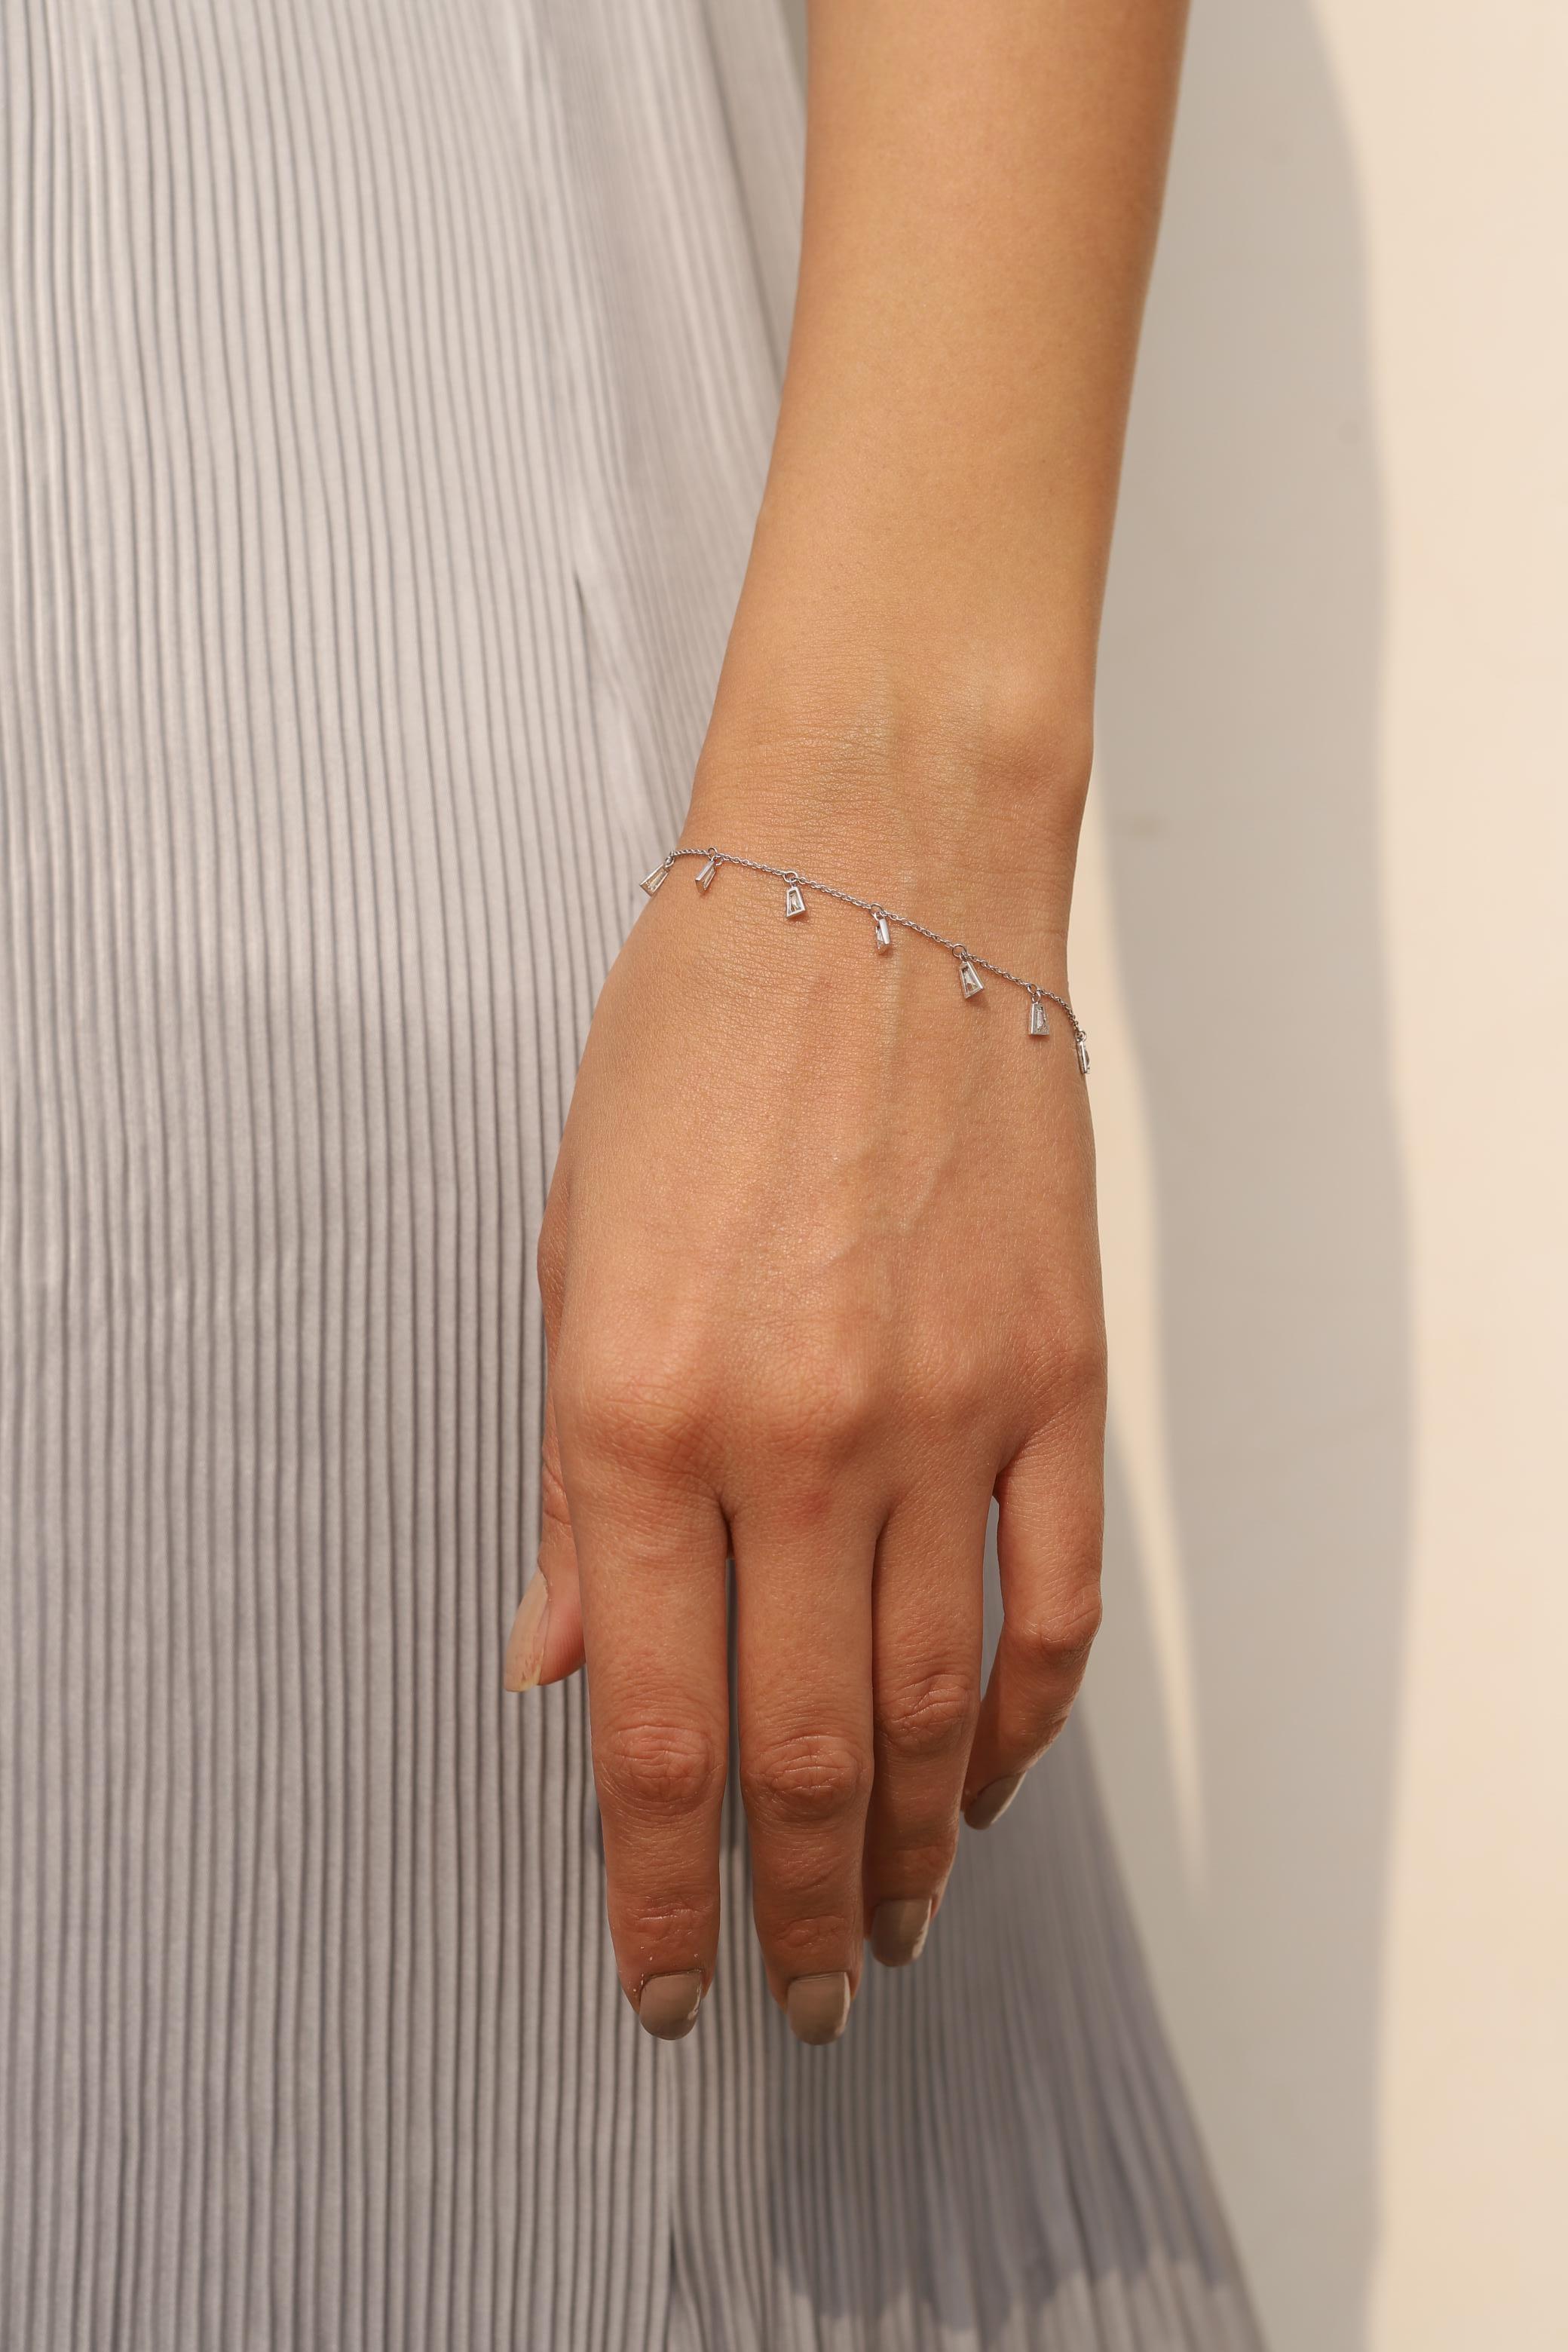 Dieses Baguette-Diamant-Charm-Armband aus 18 Karat Gold präsentiert funkelnde natürliche Diamanten mit einem Gewicht von 0,94 Karat. 
Der April-Geburtsstein Diamant bringt Liebe, Ruhm, Erfolg und Wohlstand.
Das Design mit Diamanten im